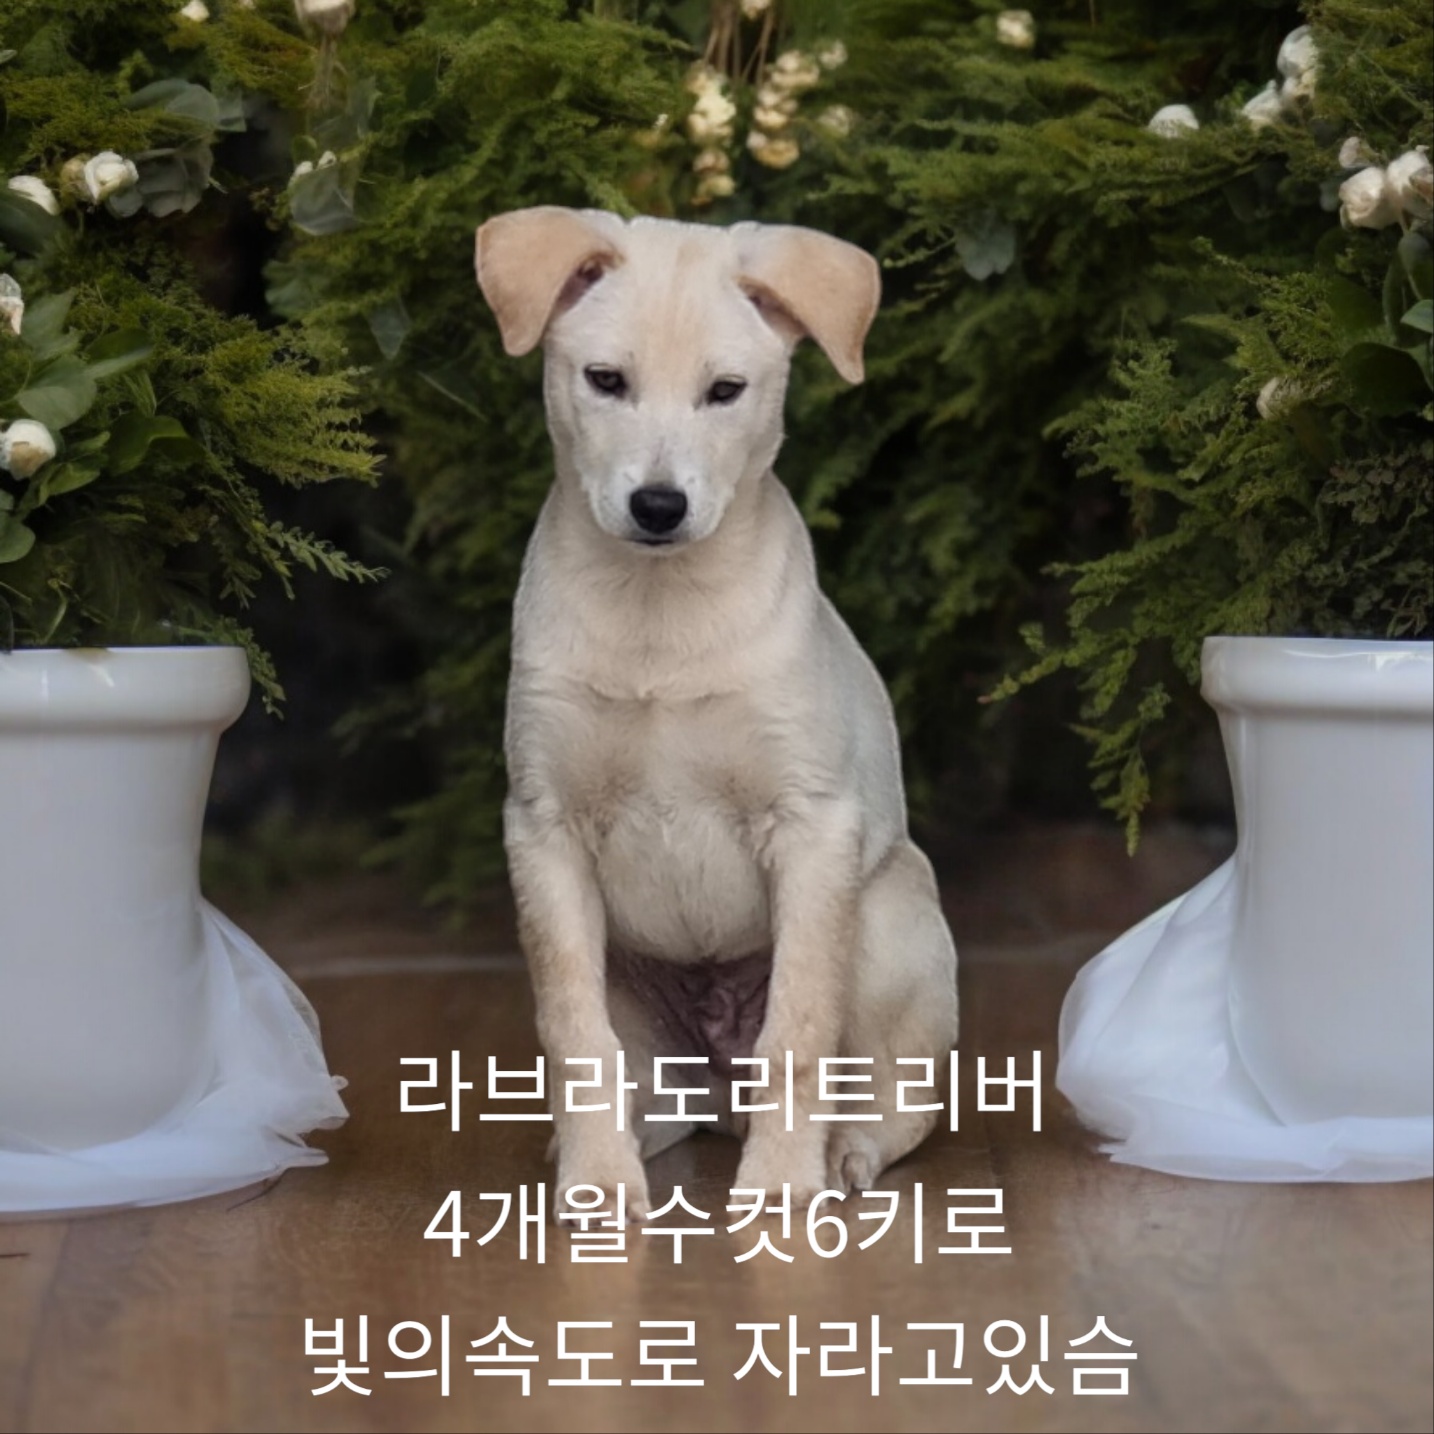 공고 번호가 경북-성주-2024-00219인 라브라도 리트리버 동물 사진